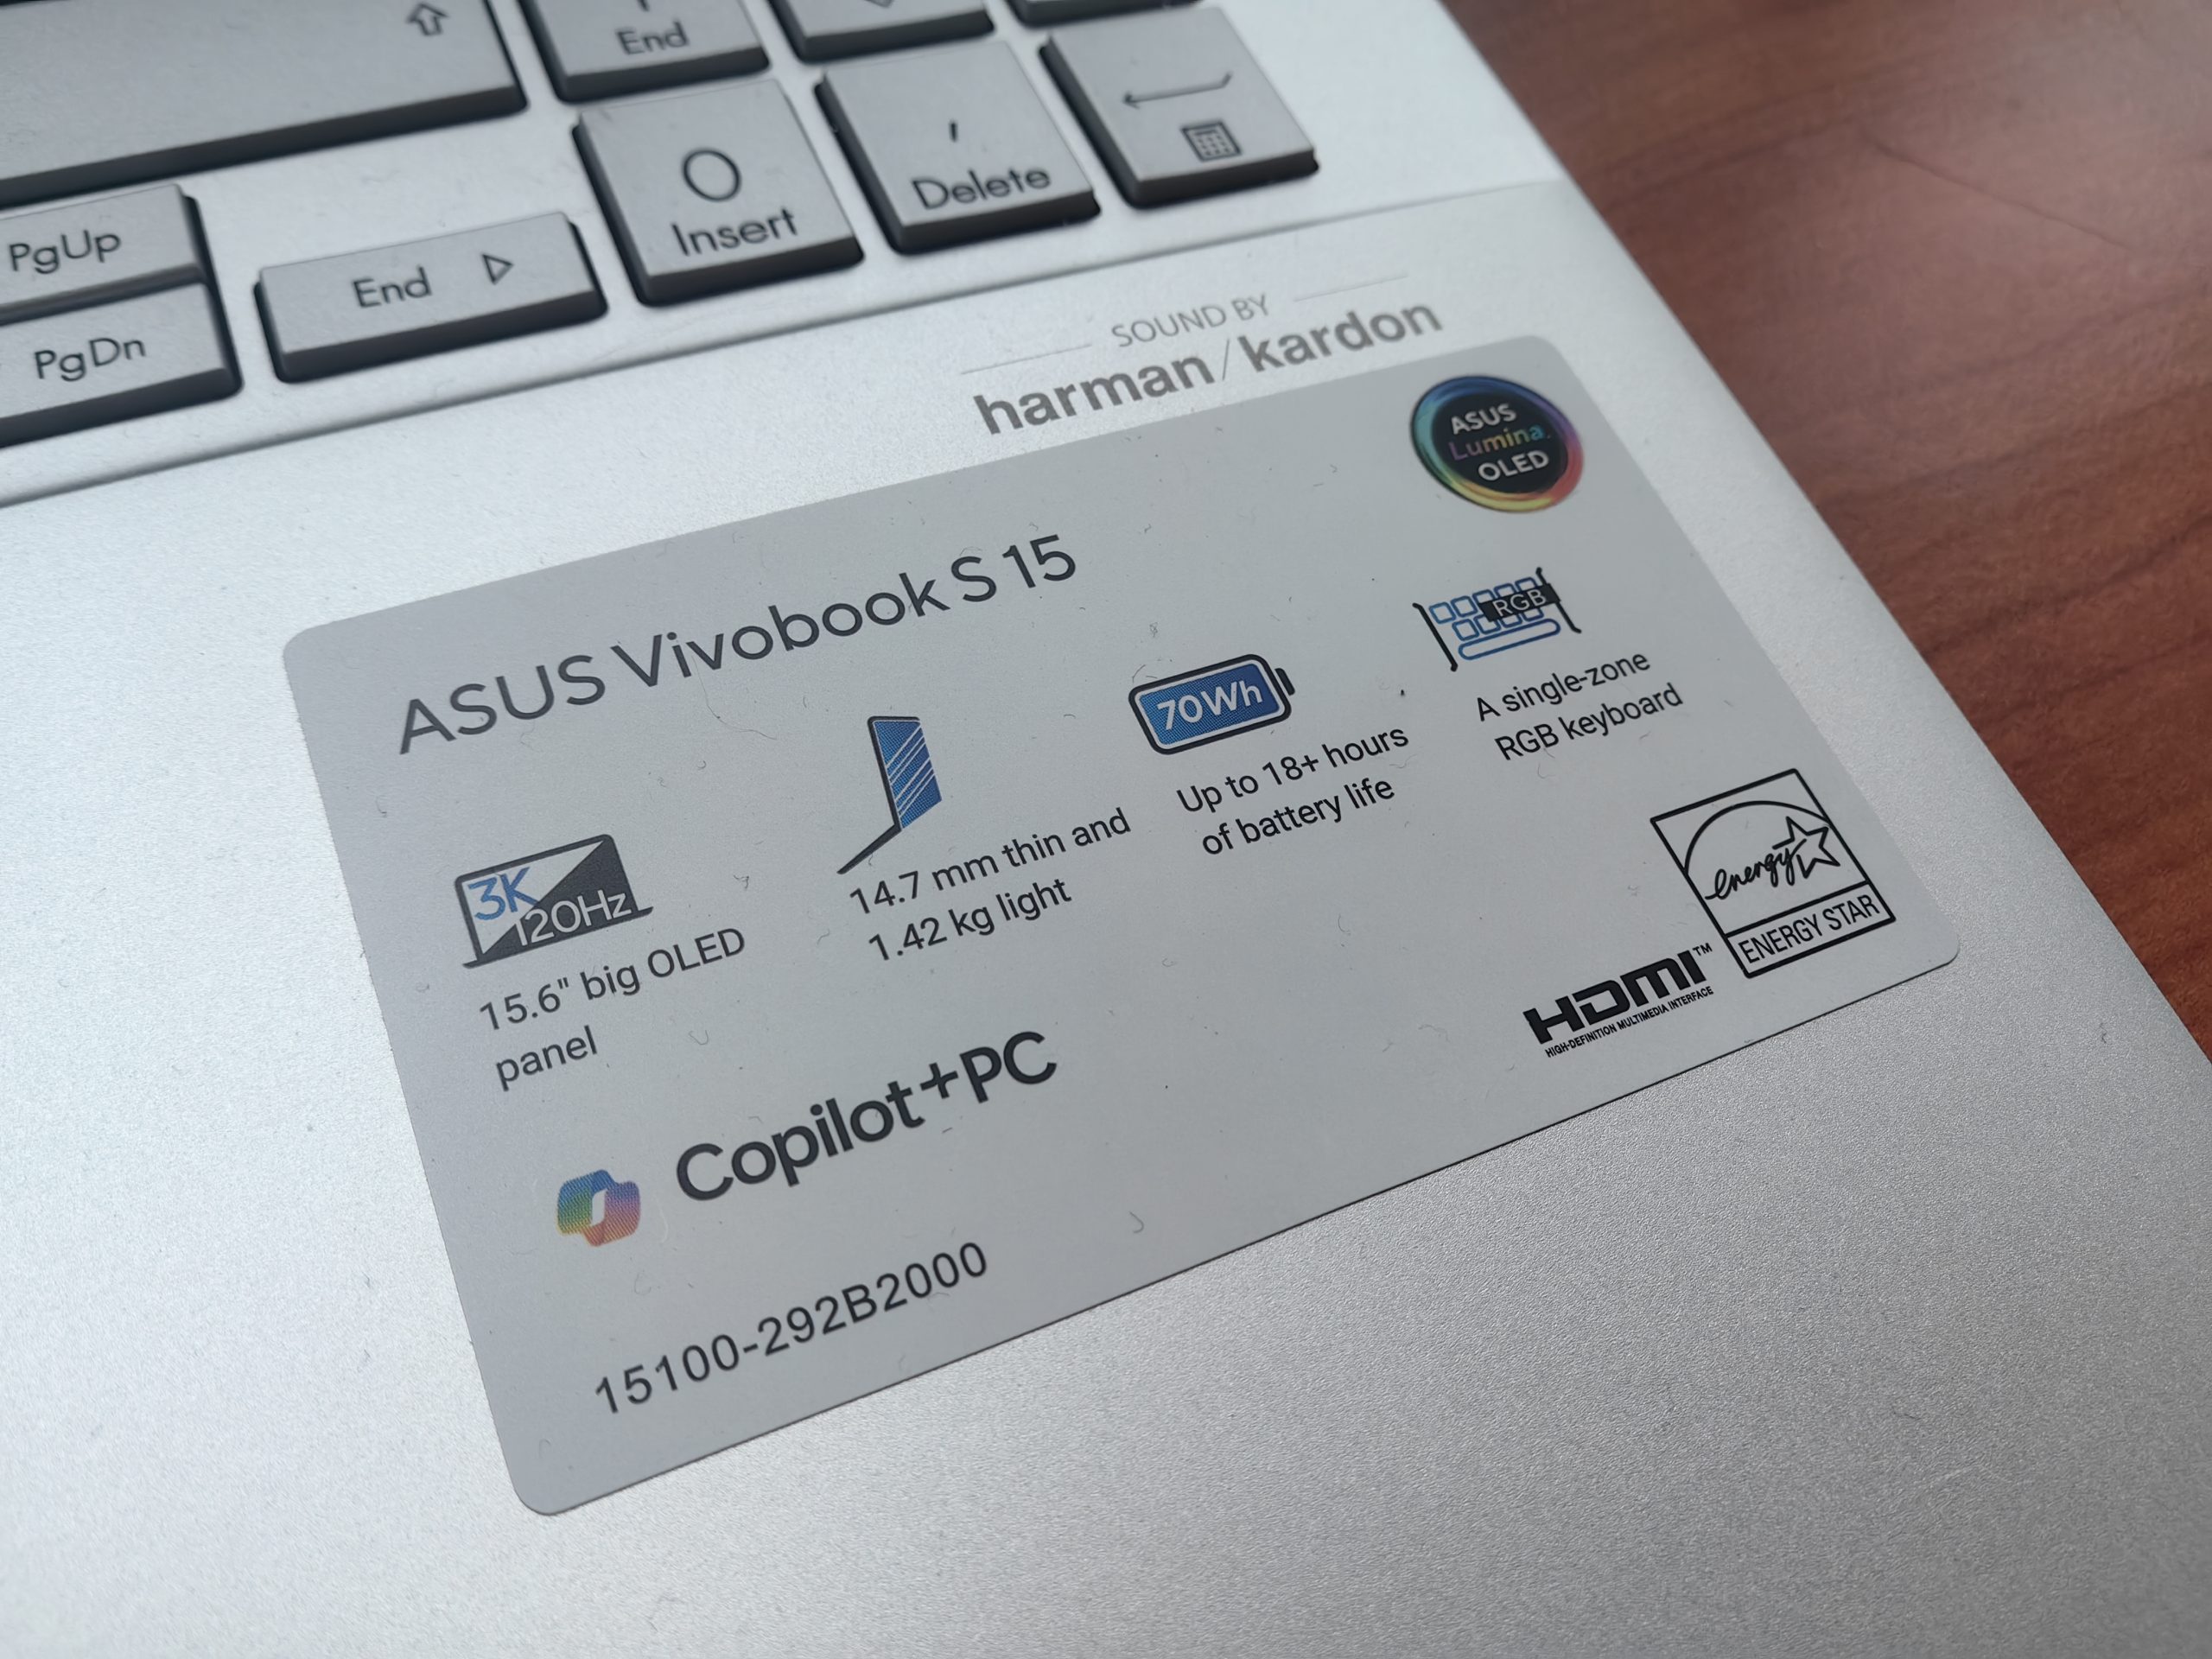 ASUS Vivobook S 15 is part of the Copilot+ line